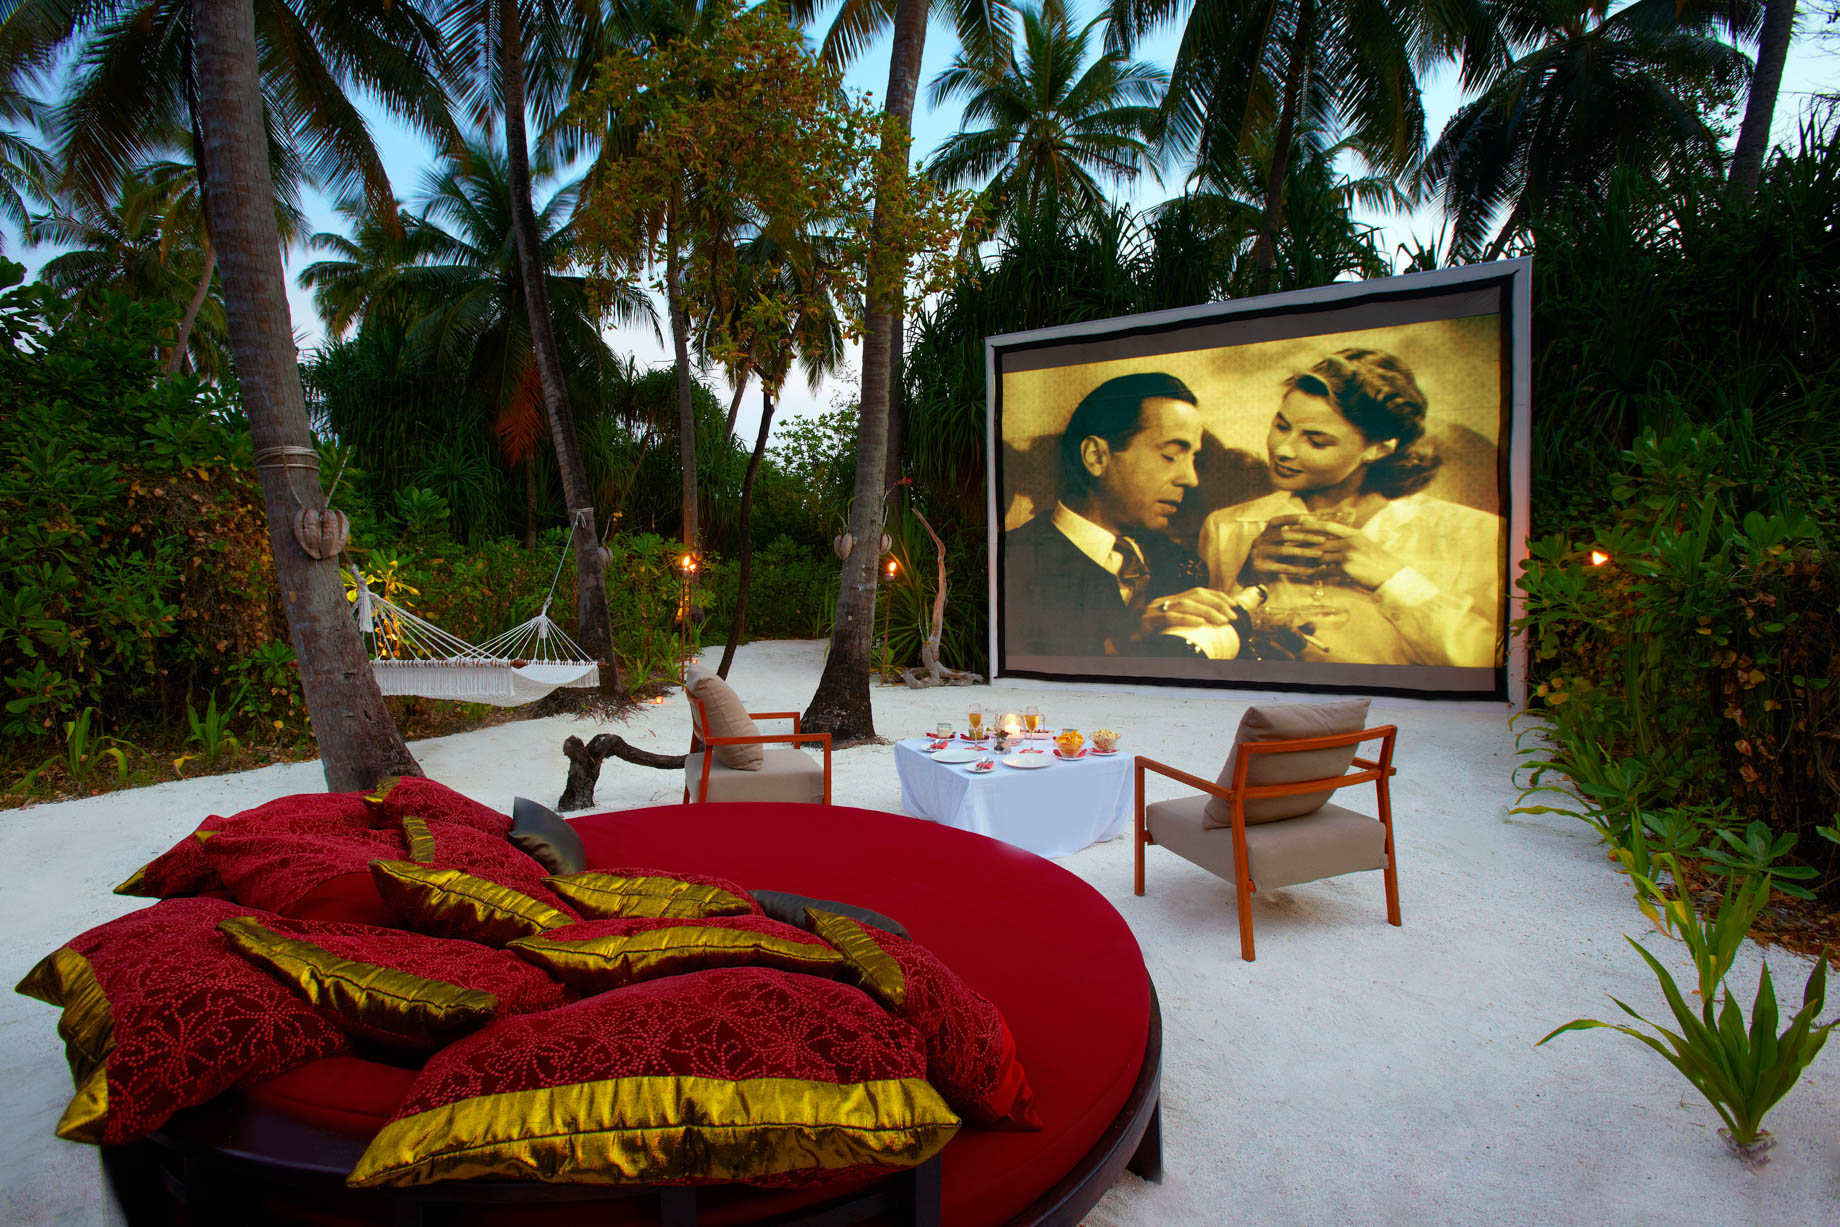 Anantara Kihavah Maldives Villas Resort – Baa Atoll, Maldives – Beach Cinema